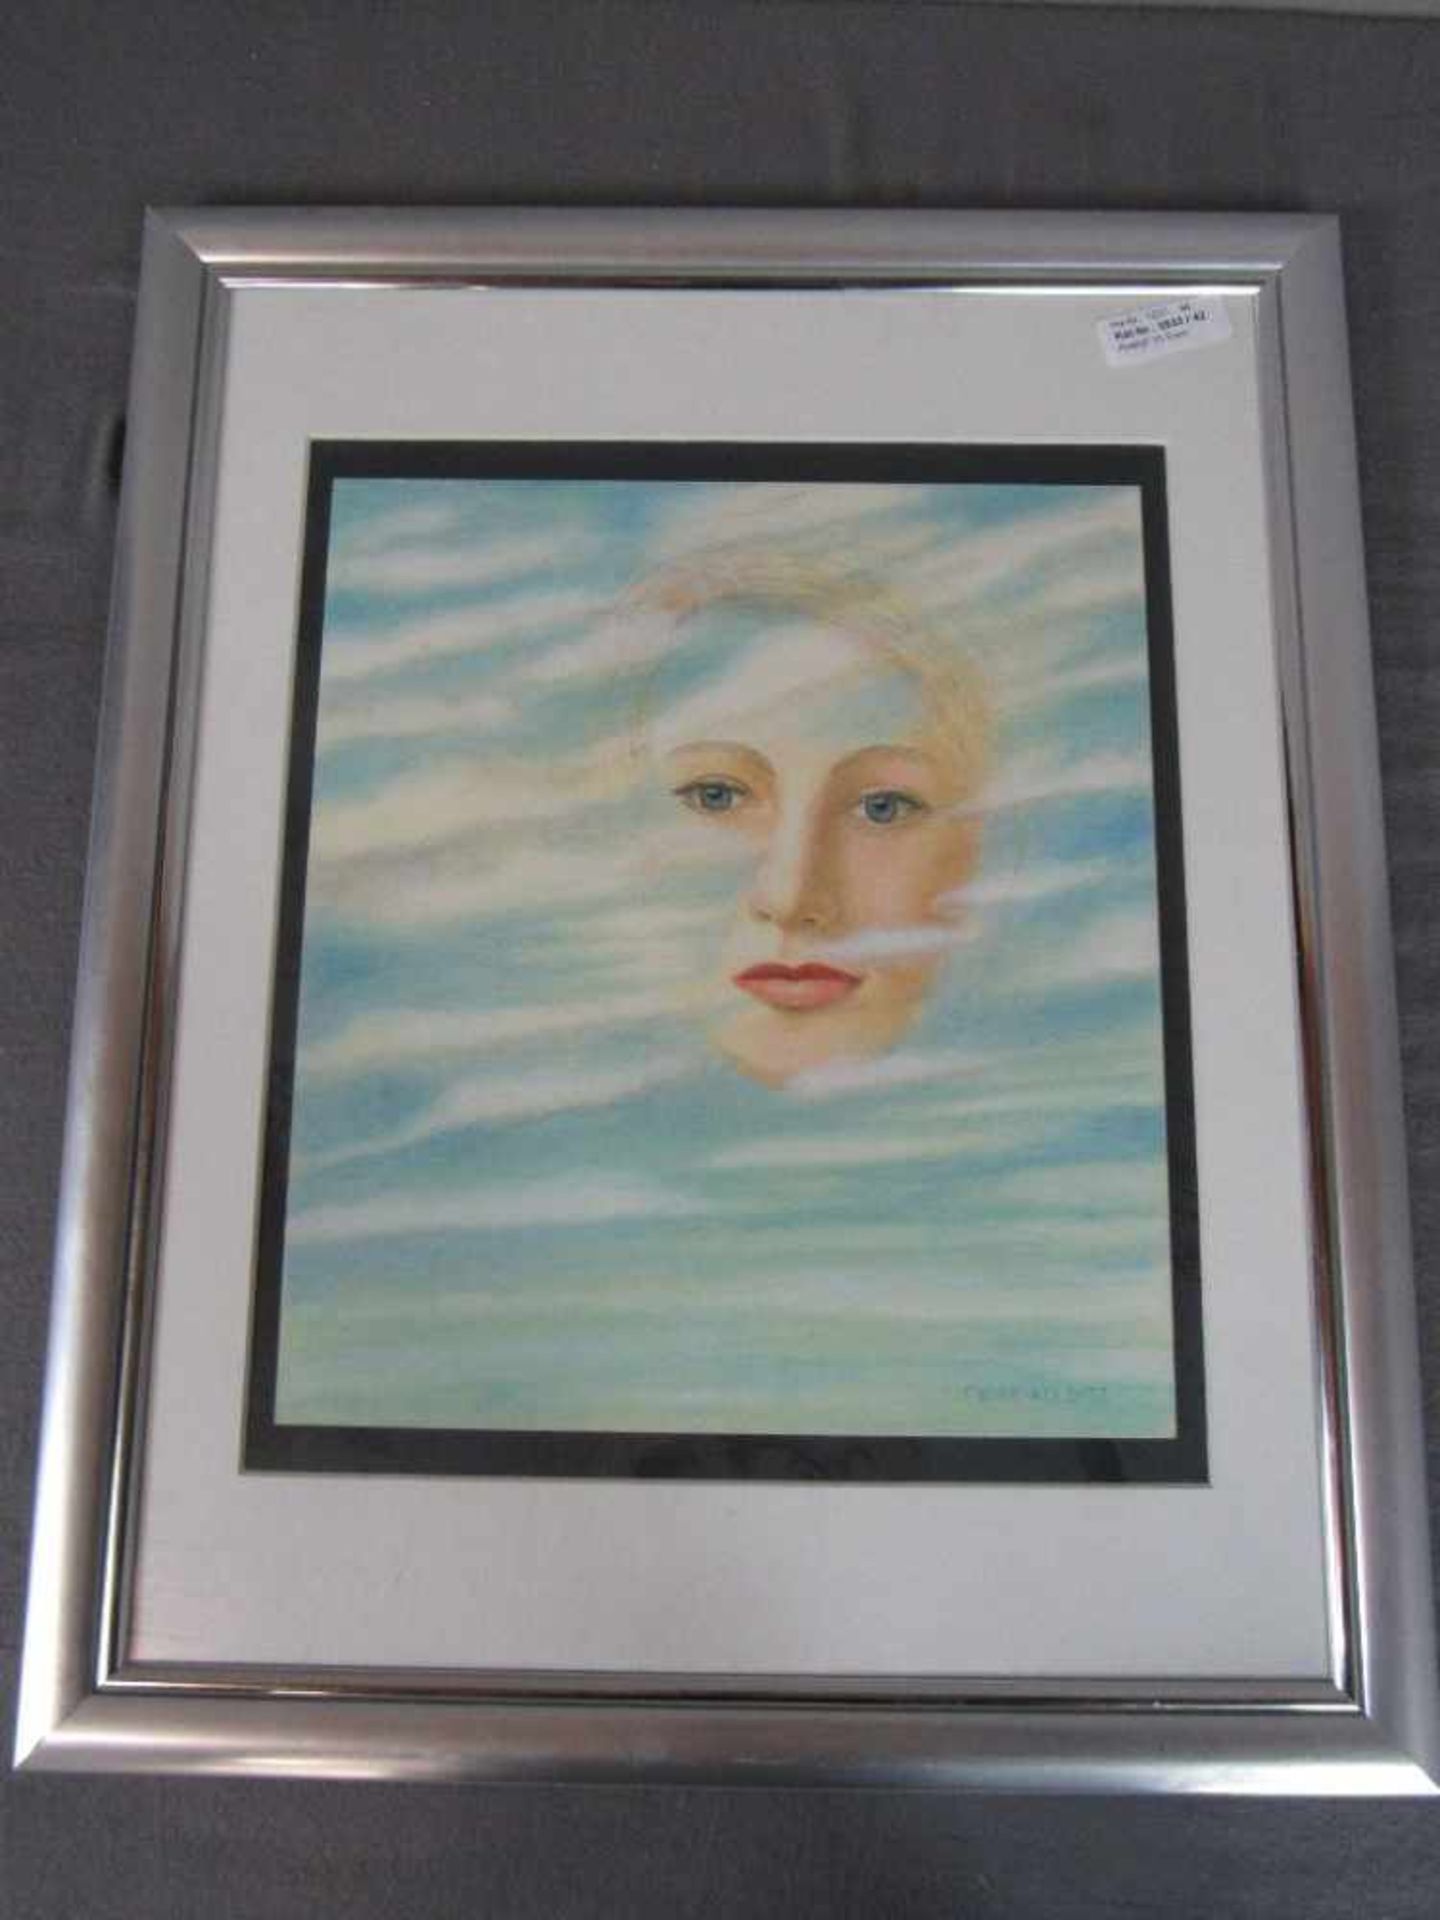 Zeichnung Damenportrait Meyer-Kolwitz 45x56cm- - -20.00 % buyer's premium on the hammer price19.00 % - Image 2 of 4